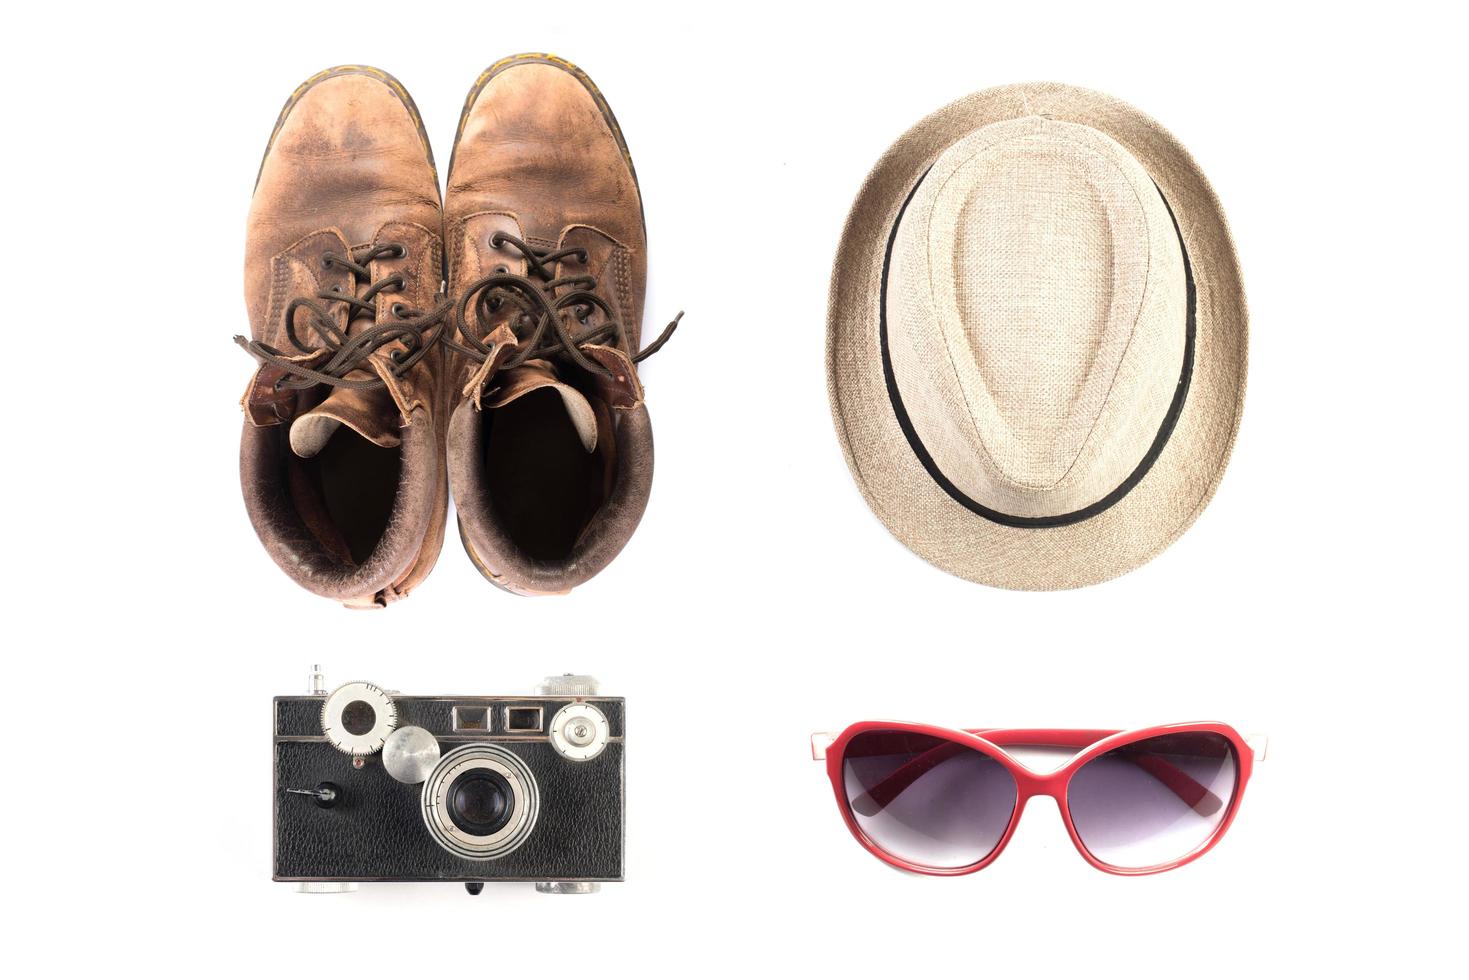 Tourismusmodell von Vintage-Kamera, Hut, Schuhen und Sonnenbrille foto